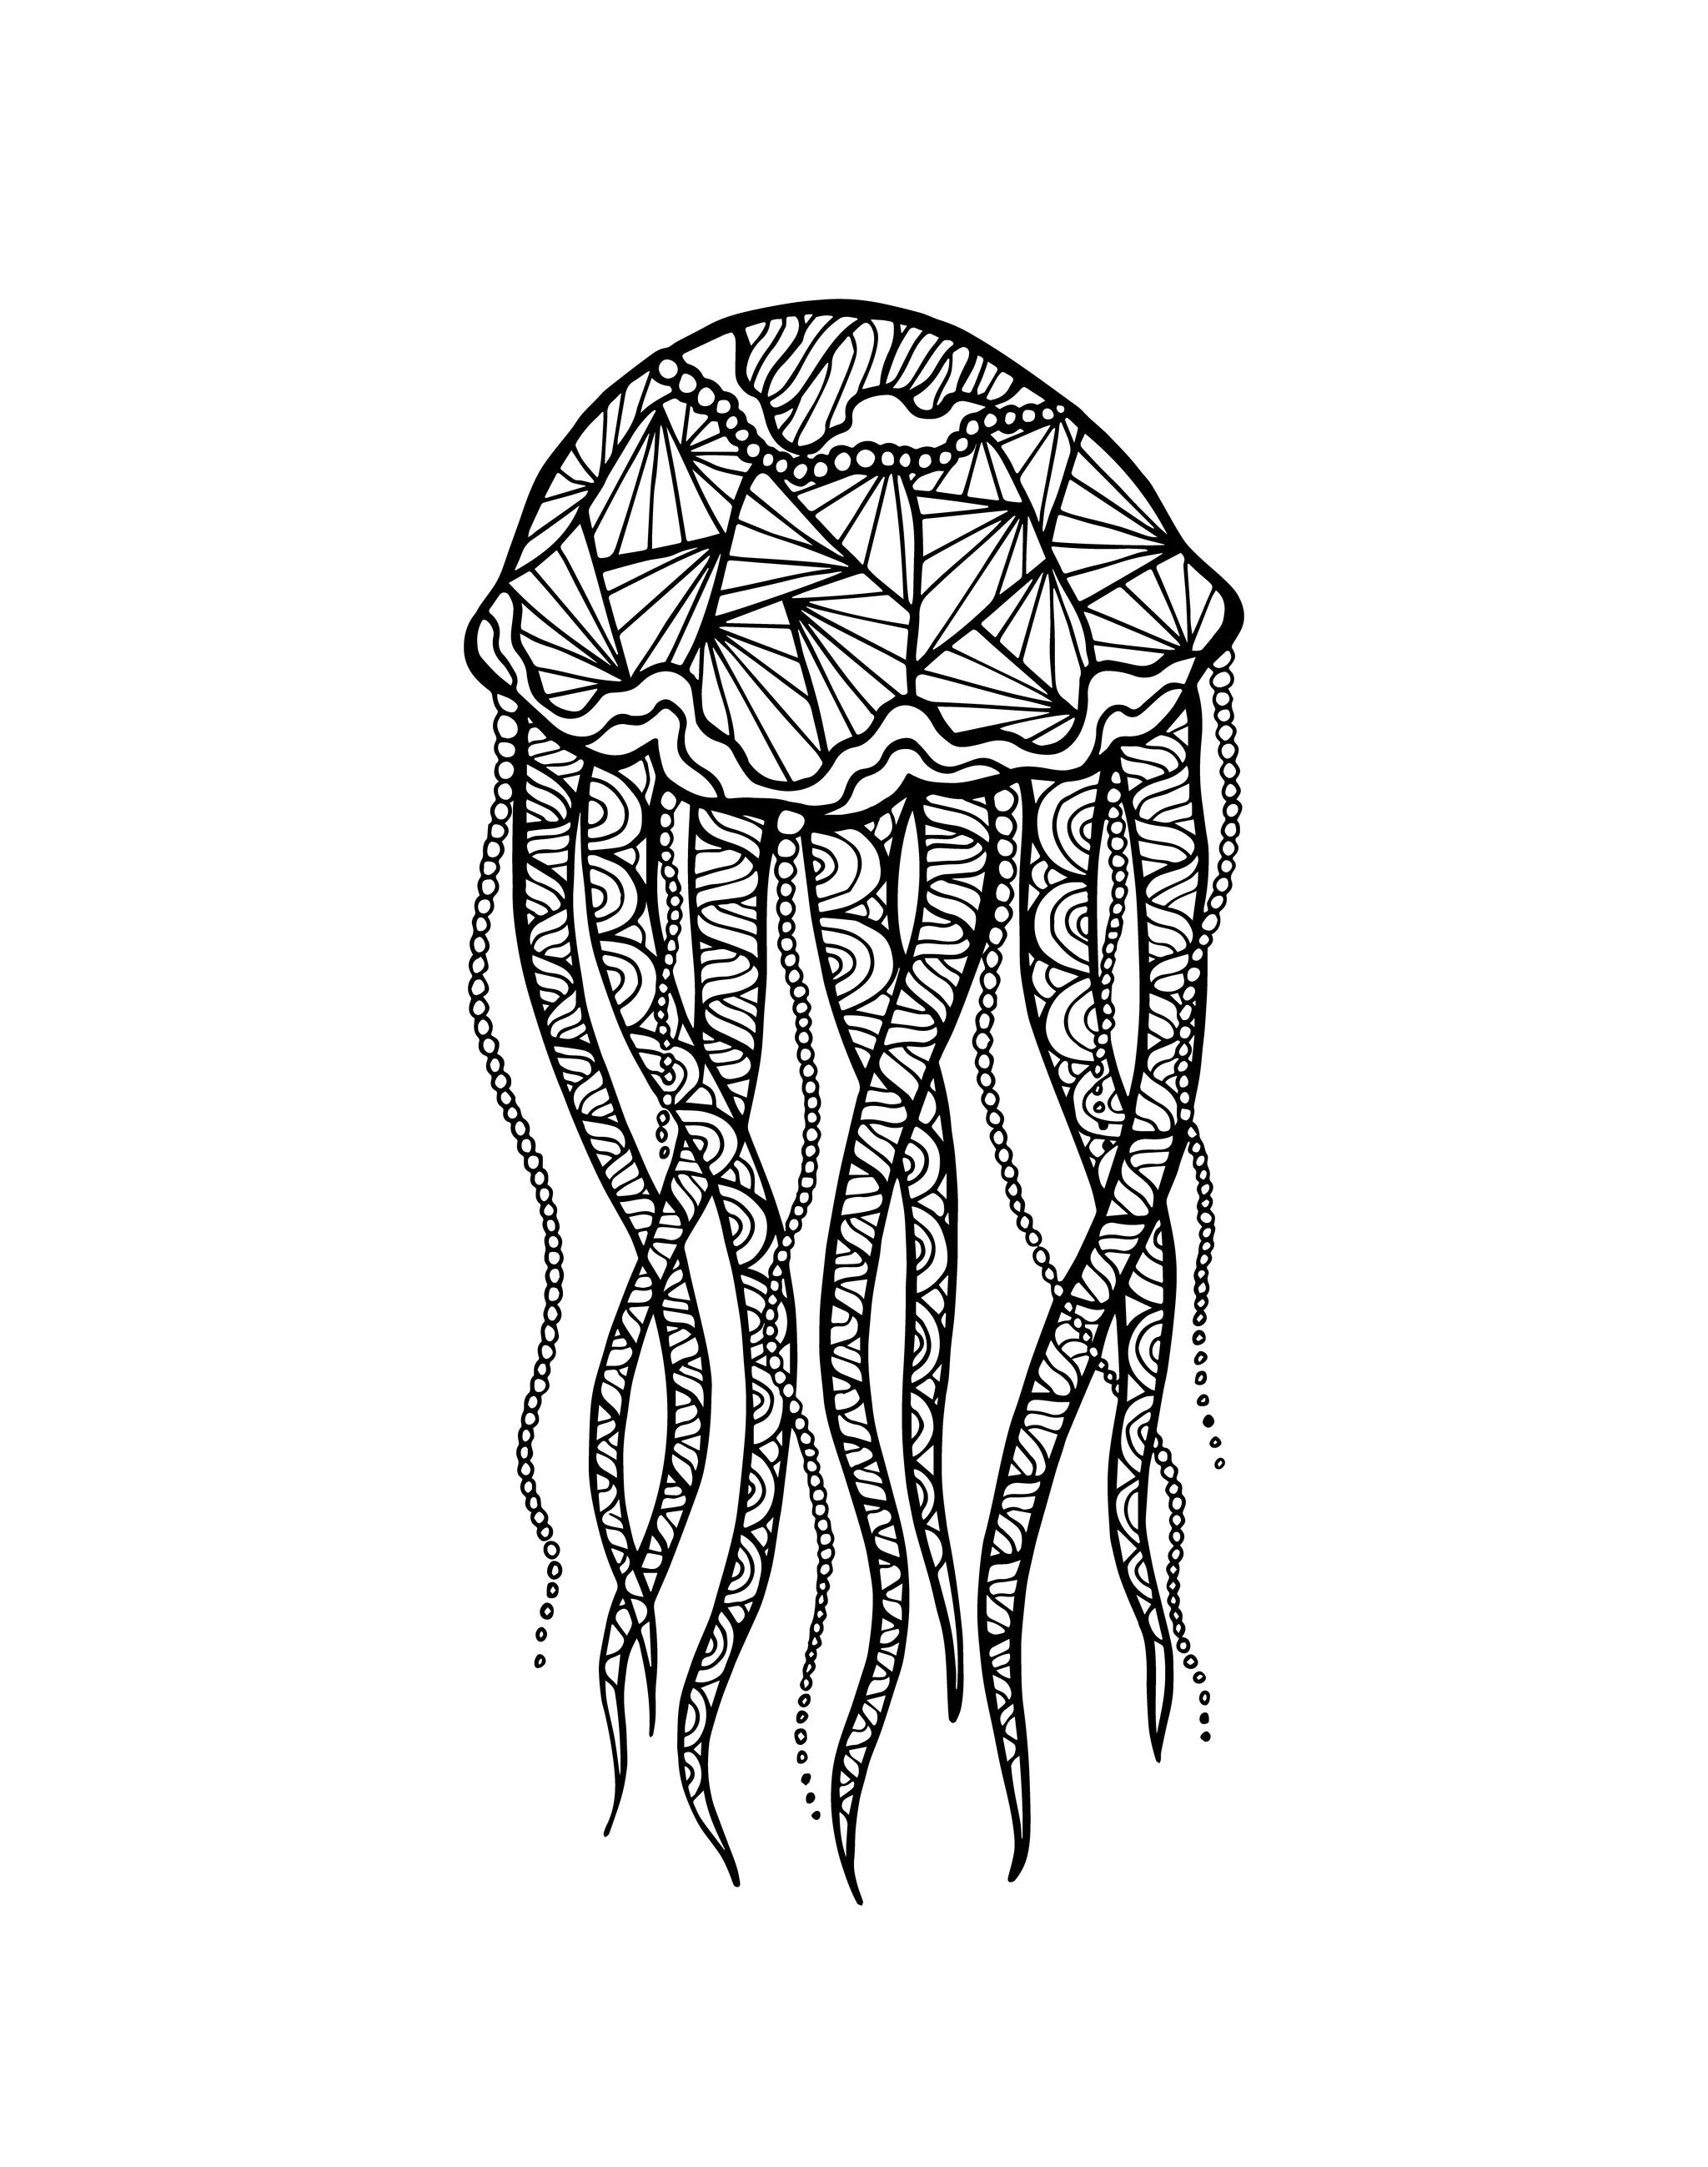 Desenho original de uma medusa feita com o método Zen-tangle, para ser colorida, por Meggichka (fonte: 123rf)